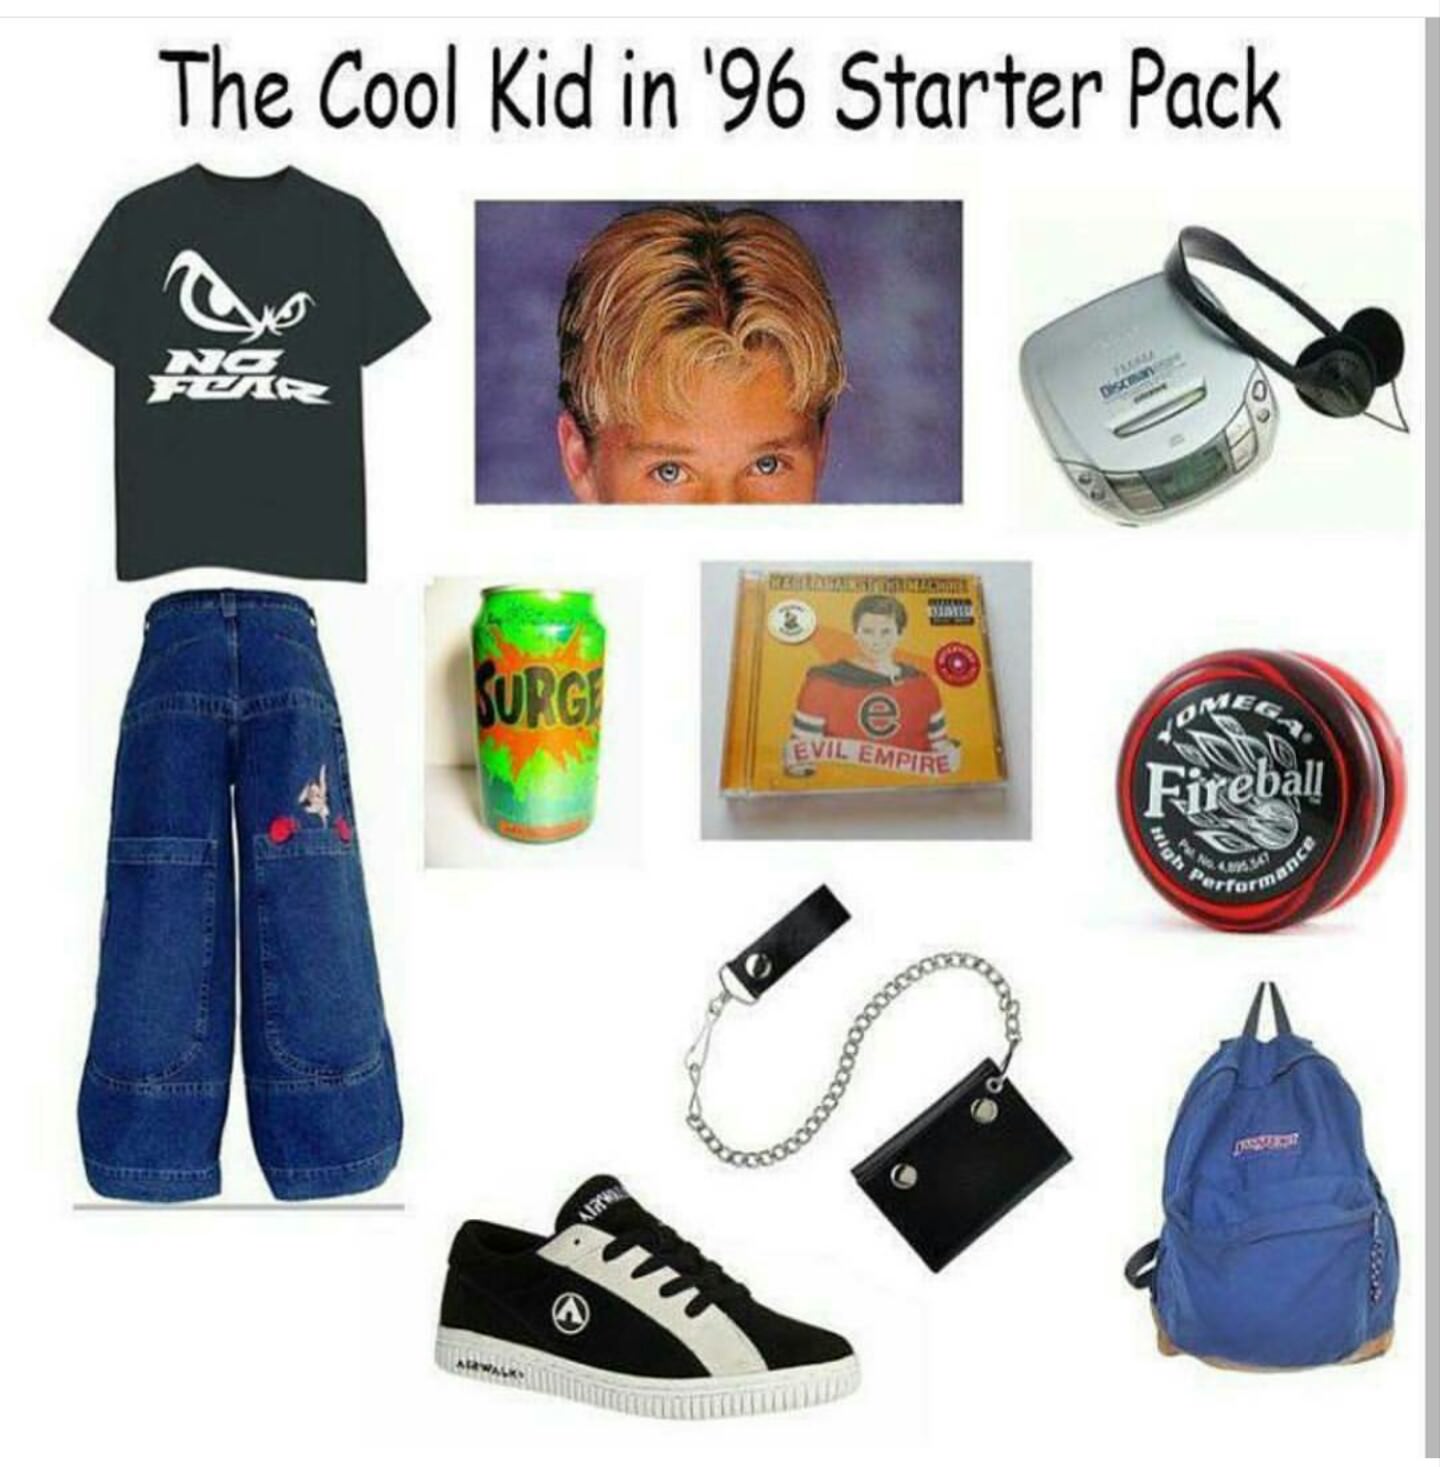 starter pack - 90s kid nostalgia - The Cool Kid in '96 Starter Pack La Eg Evil Empire Fireball rform 0000000